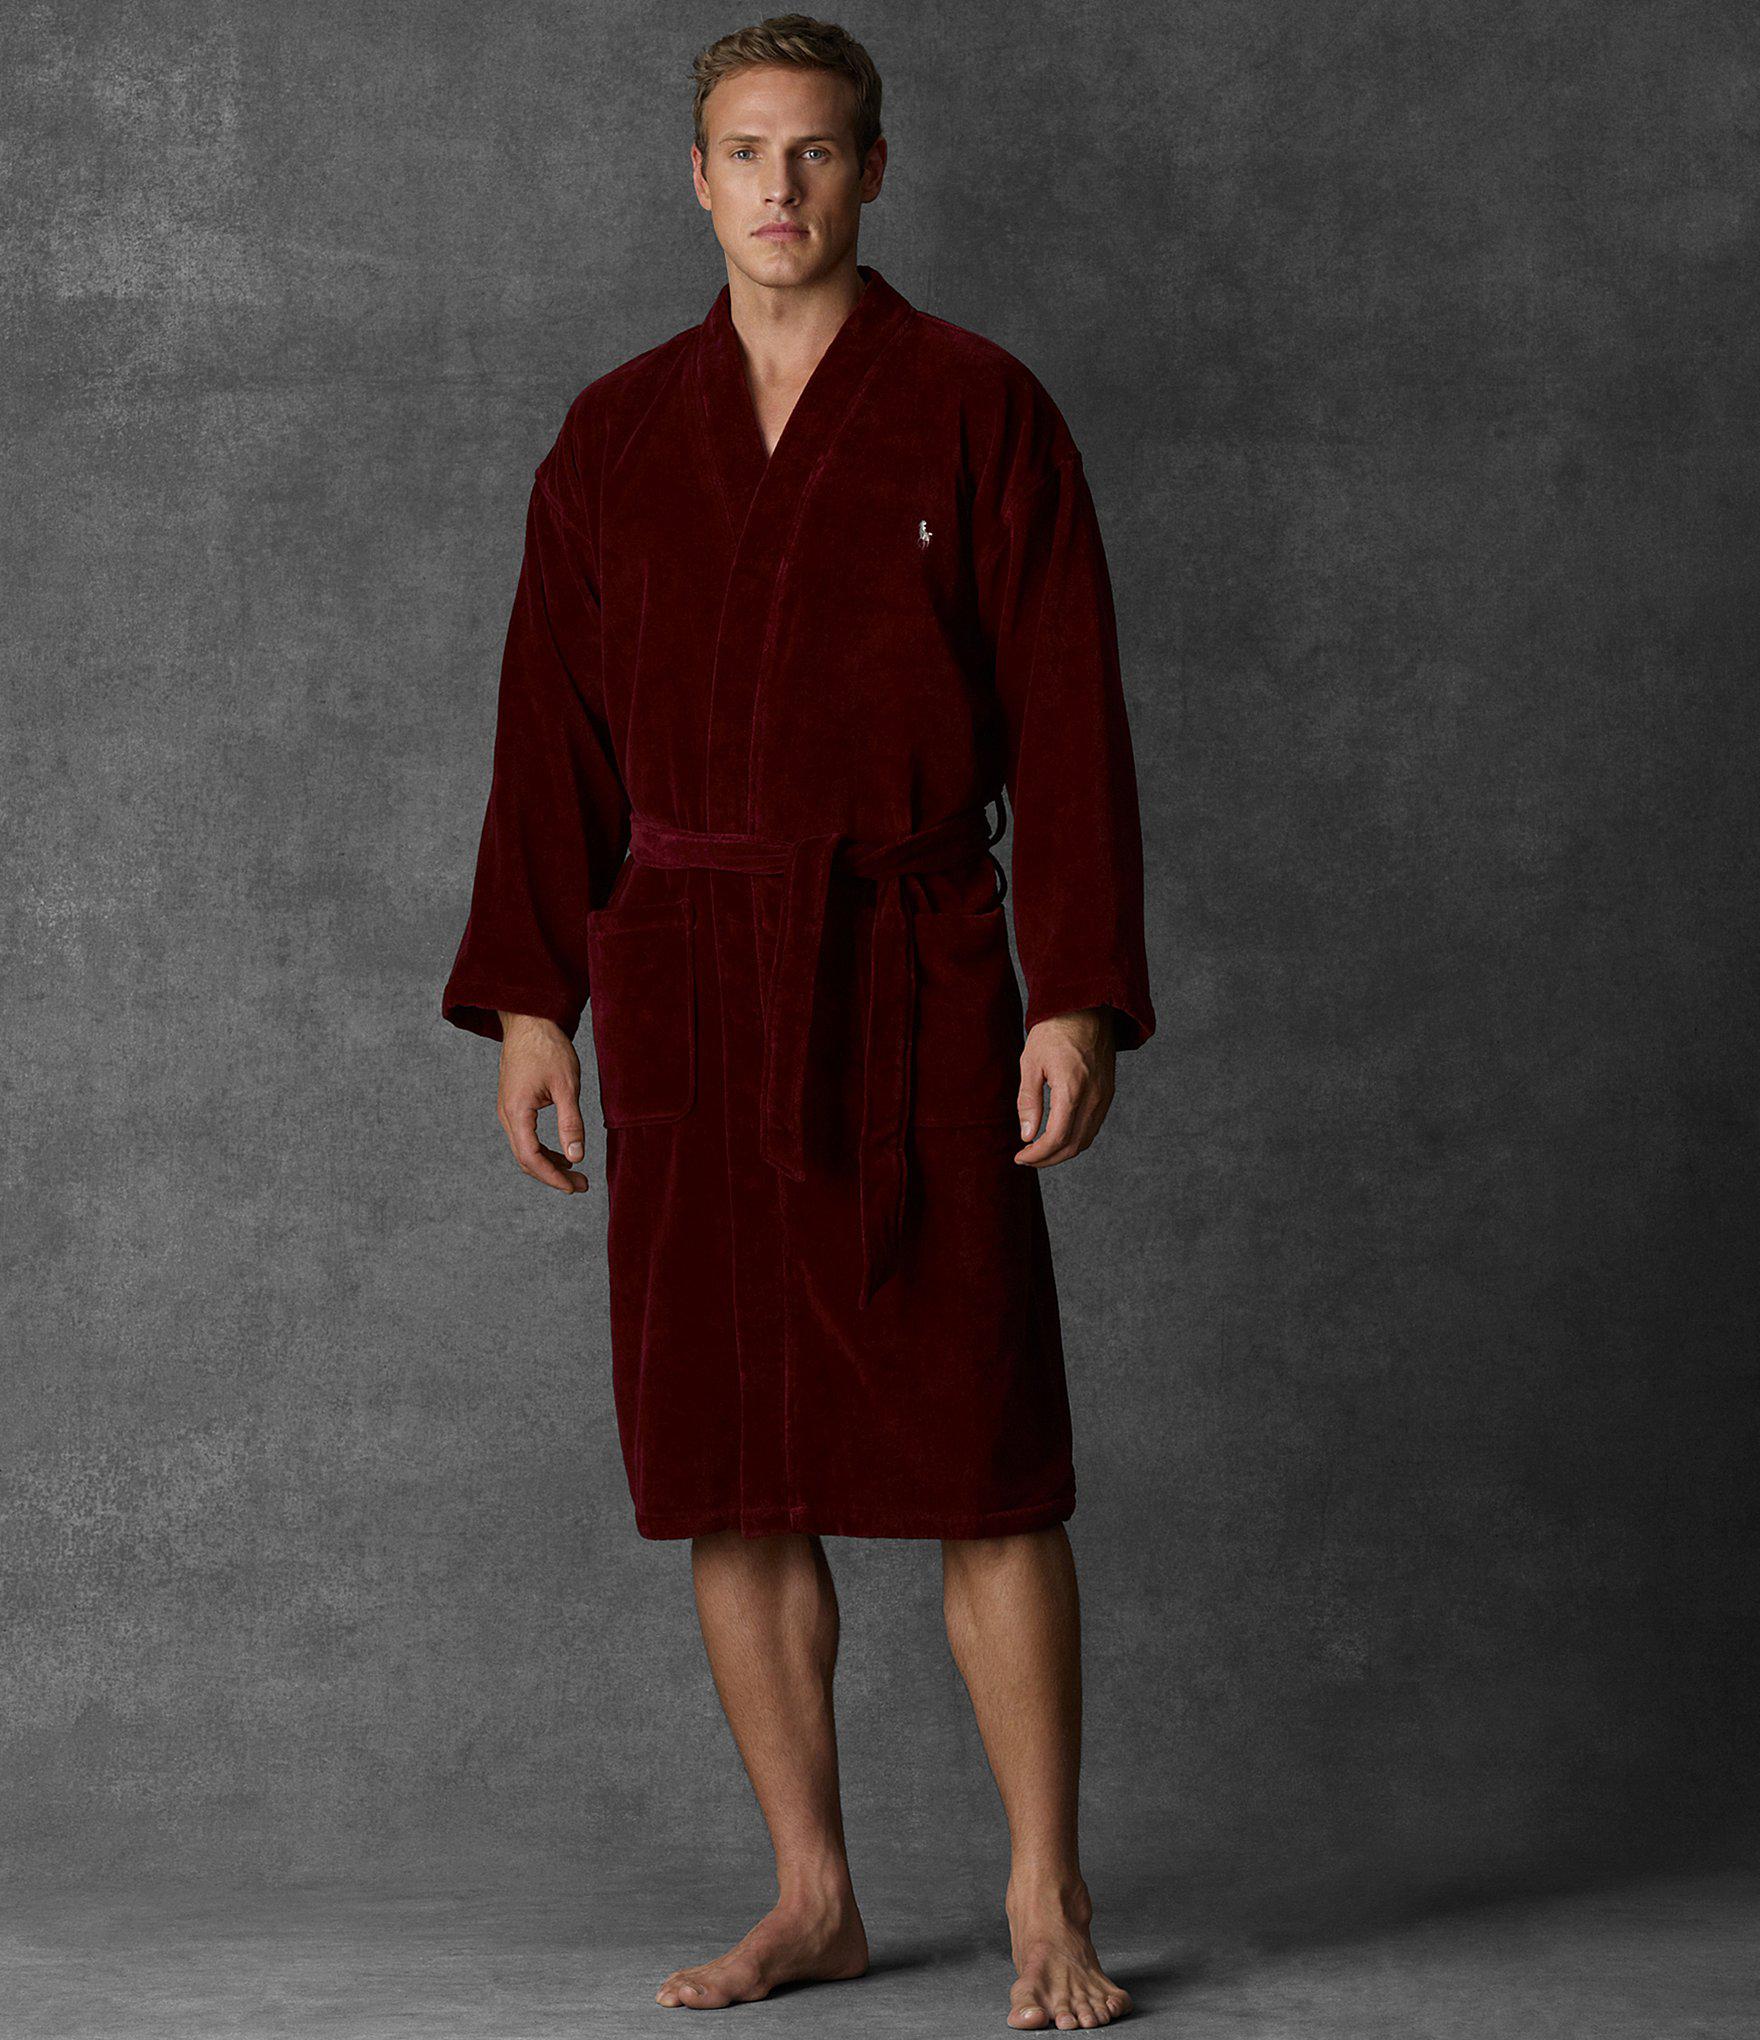 Polo Ralph Lauren Velour Kimono Robe in Red for Men - Lyst